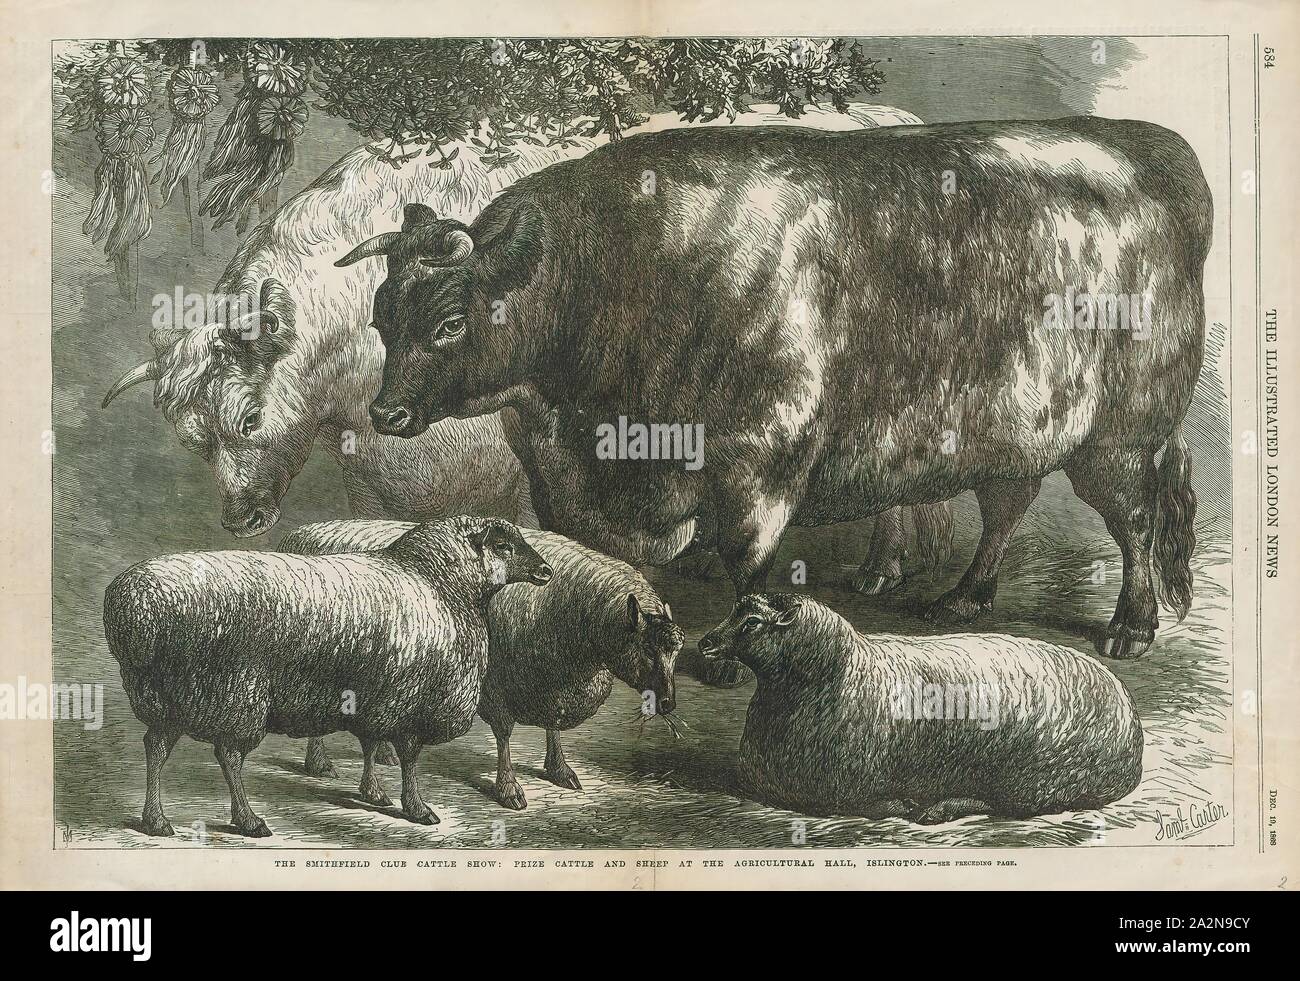 Ovis aries, Imprimer, mouton domestique (Ovis aries) sont des mammifères quadrupède ruminant, généralement conservés comme du bétail. Comme la plupart des ruminants, les moutons sont membres de l'ordre des artiodactyles, ongulés artiodactyles (à la. Bien que le nom des brebis s'applique à de nombreuses espèces du genre Ovis, dans l'utilisation quotidien qu'il est presque toujours référence à Ovis aries. La numérotation un peu plus d'un milliard de dollars, le mouton domestique est aussi le plus grand nombre d'espèces de moutons. Une femelle adulte ovin est appelée une brebis, un homme intact comme un bélier ou parfois un tup, un mâle castré comme dit s, et un plus jeune des moutons comme un agneau., 1868 Banque D'Images